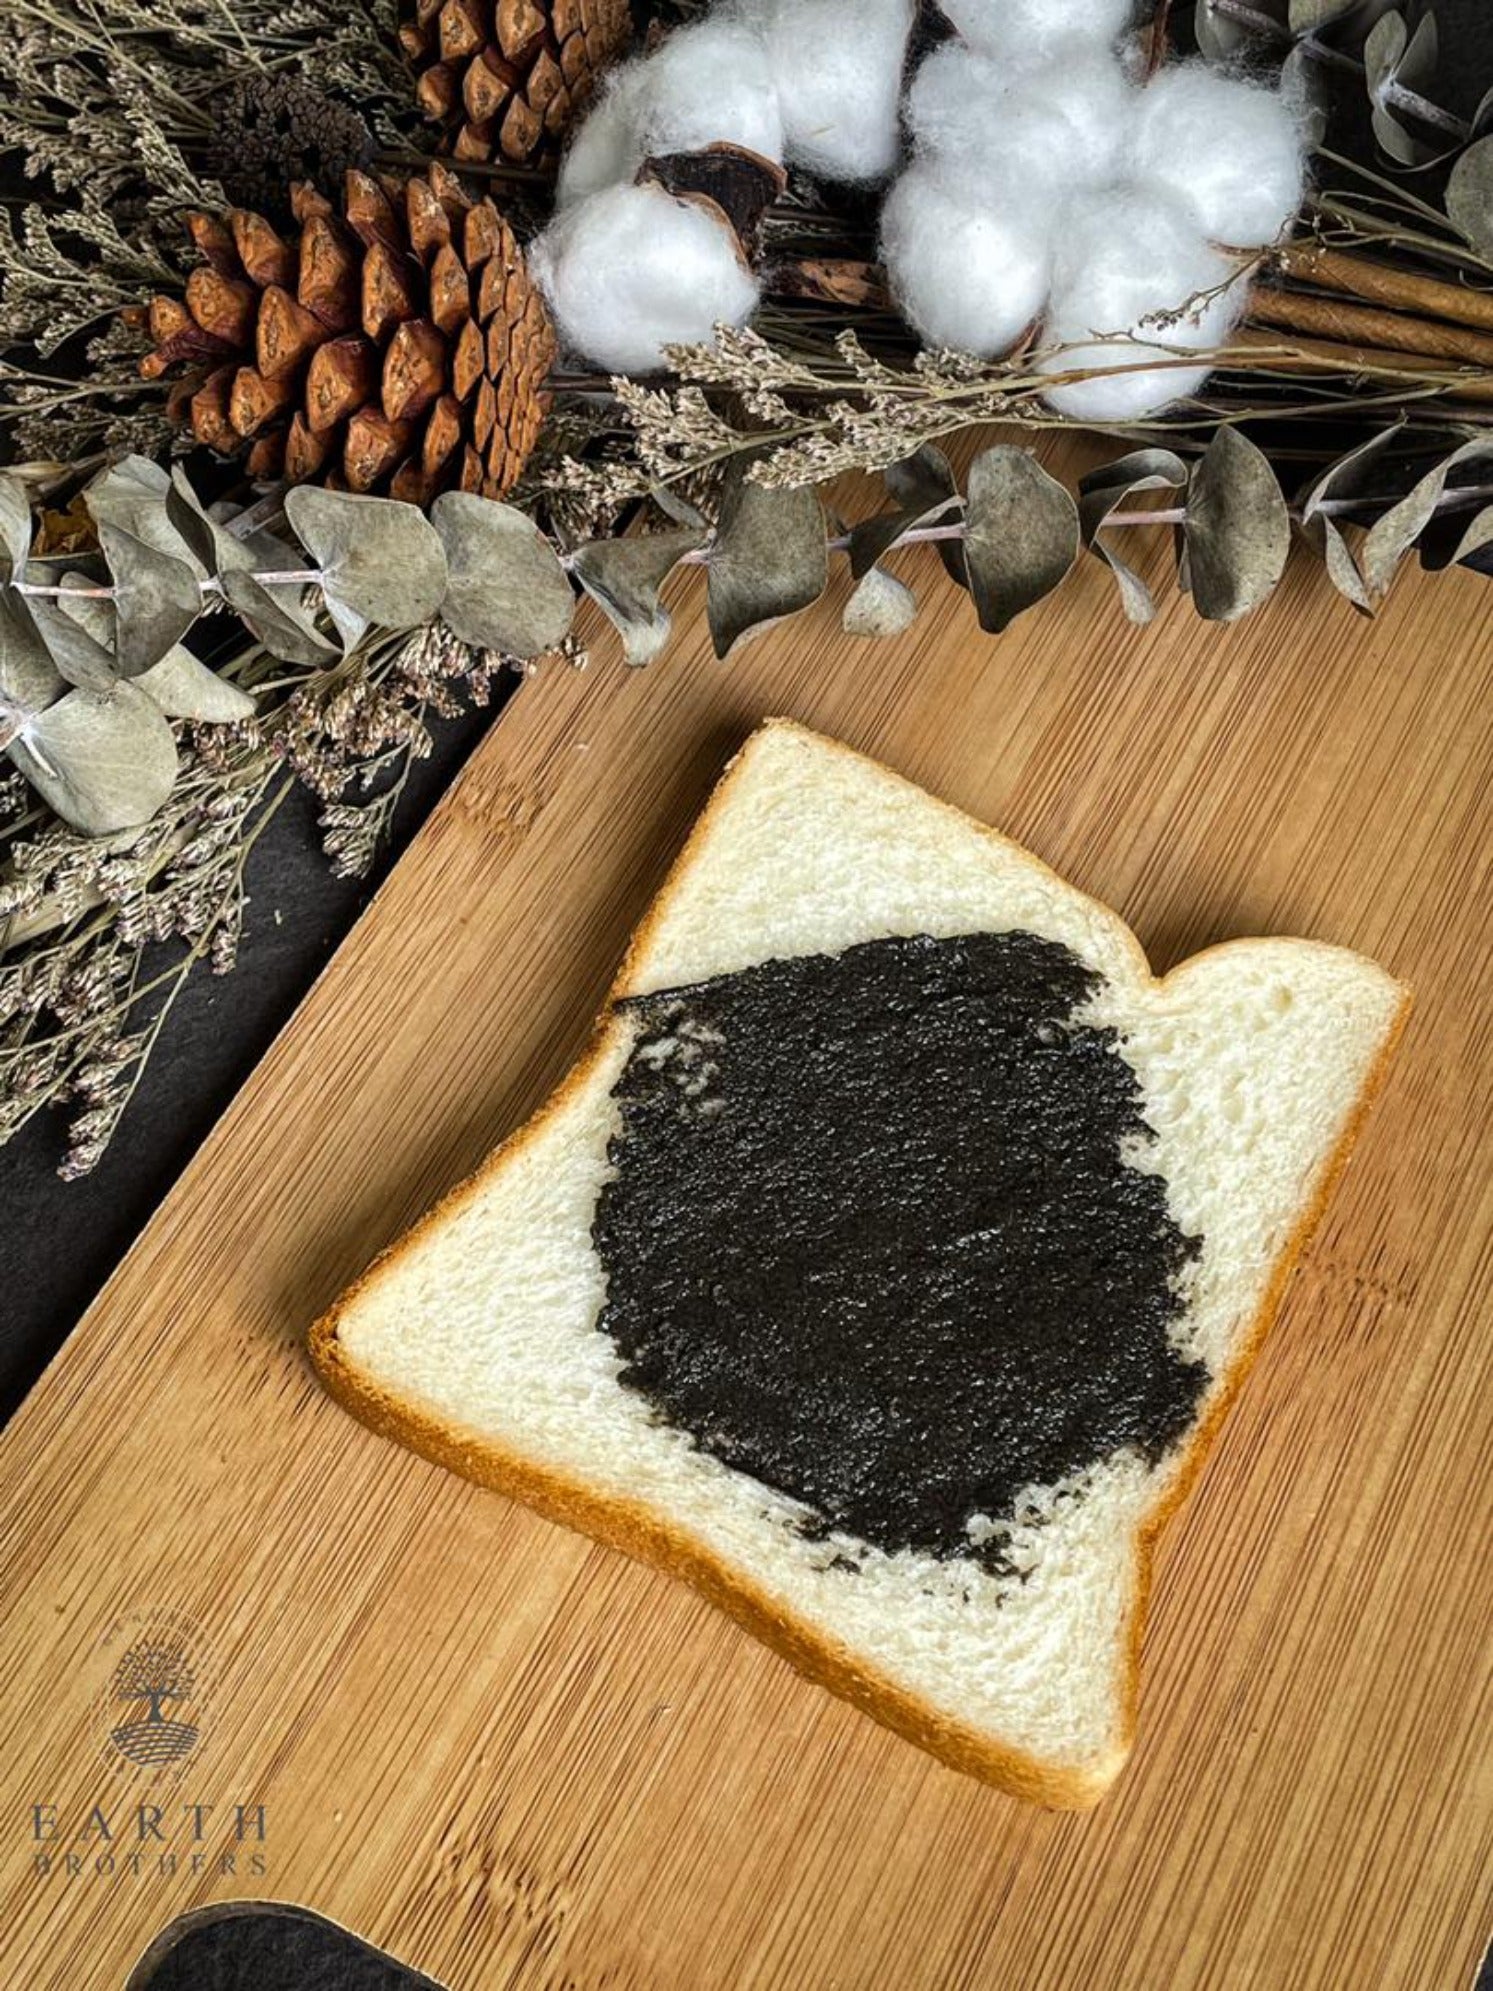 Black Sesame Almond Spread